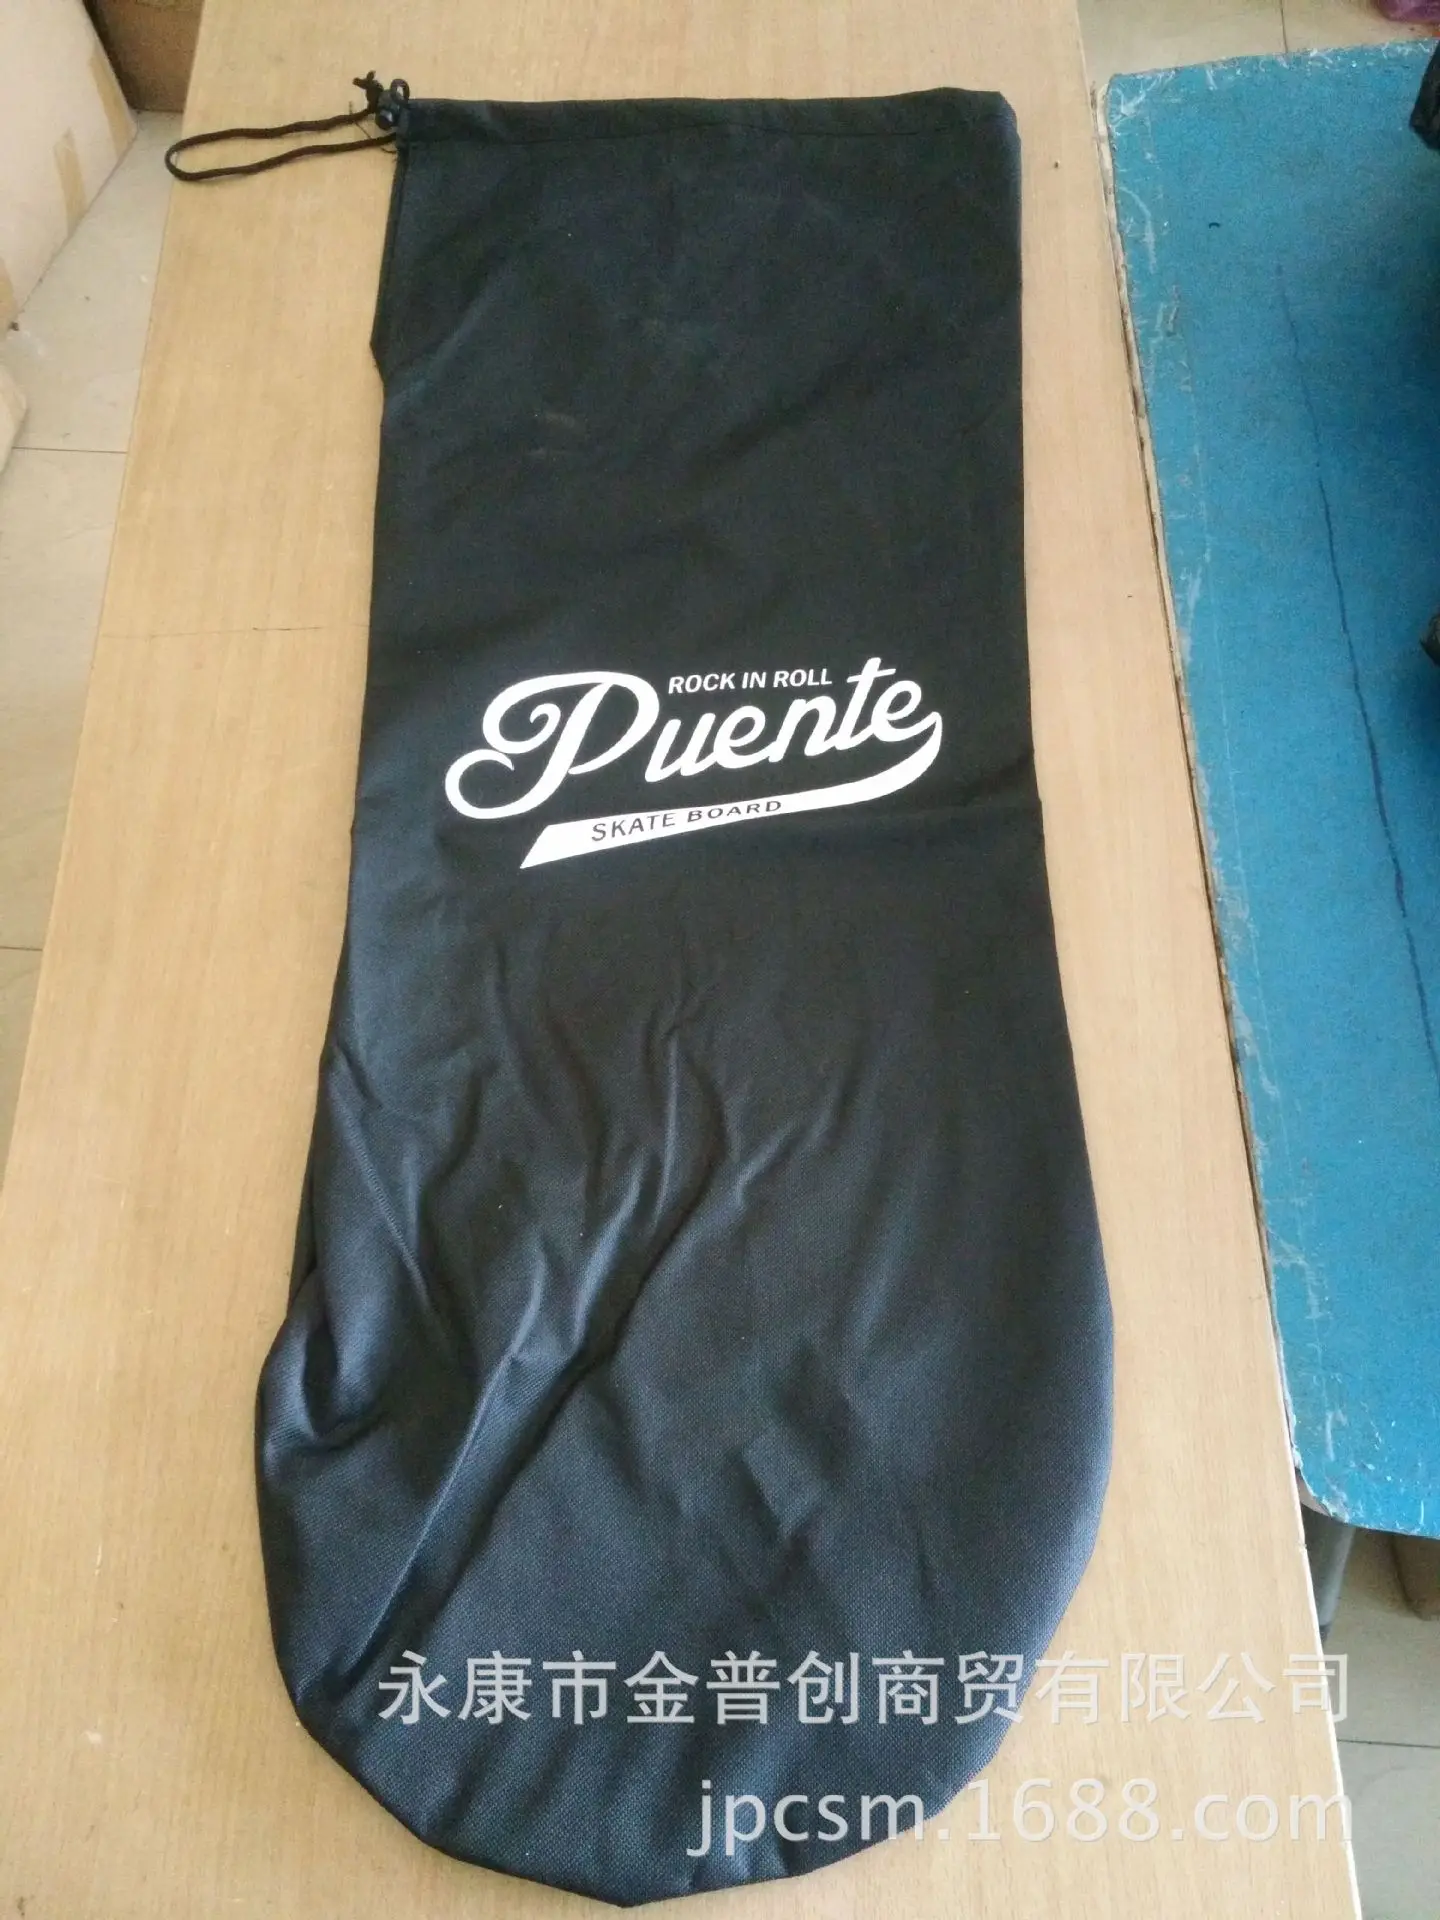 Puente скейтборд рюкзак Толстая сумка для скейтборда держатель инструмент Детский Взрослый защитный шлем производители оптом